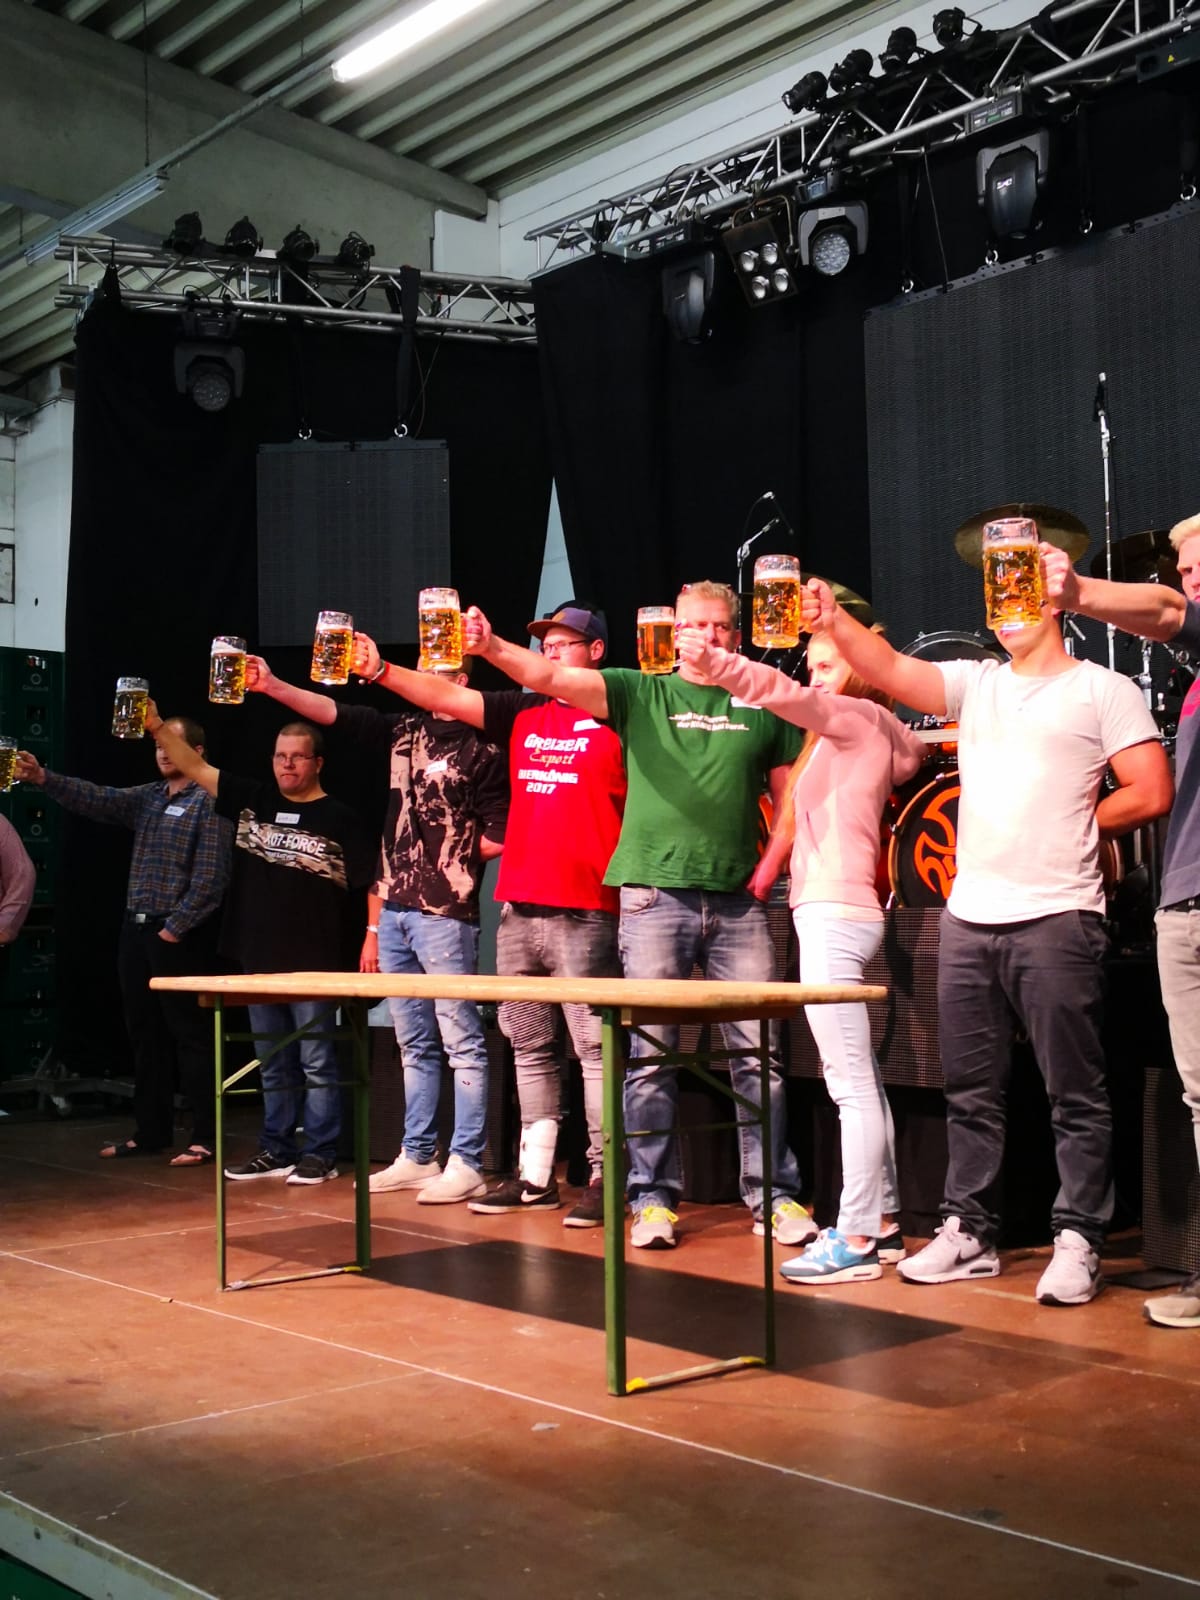 Der Kampf um den Titel "Bierkönig 2018" beim Greizer Brauereifest